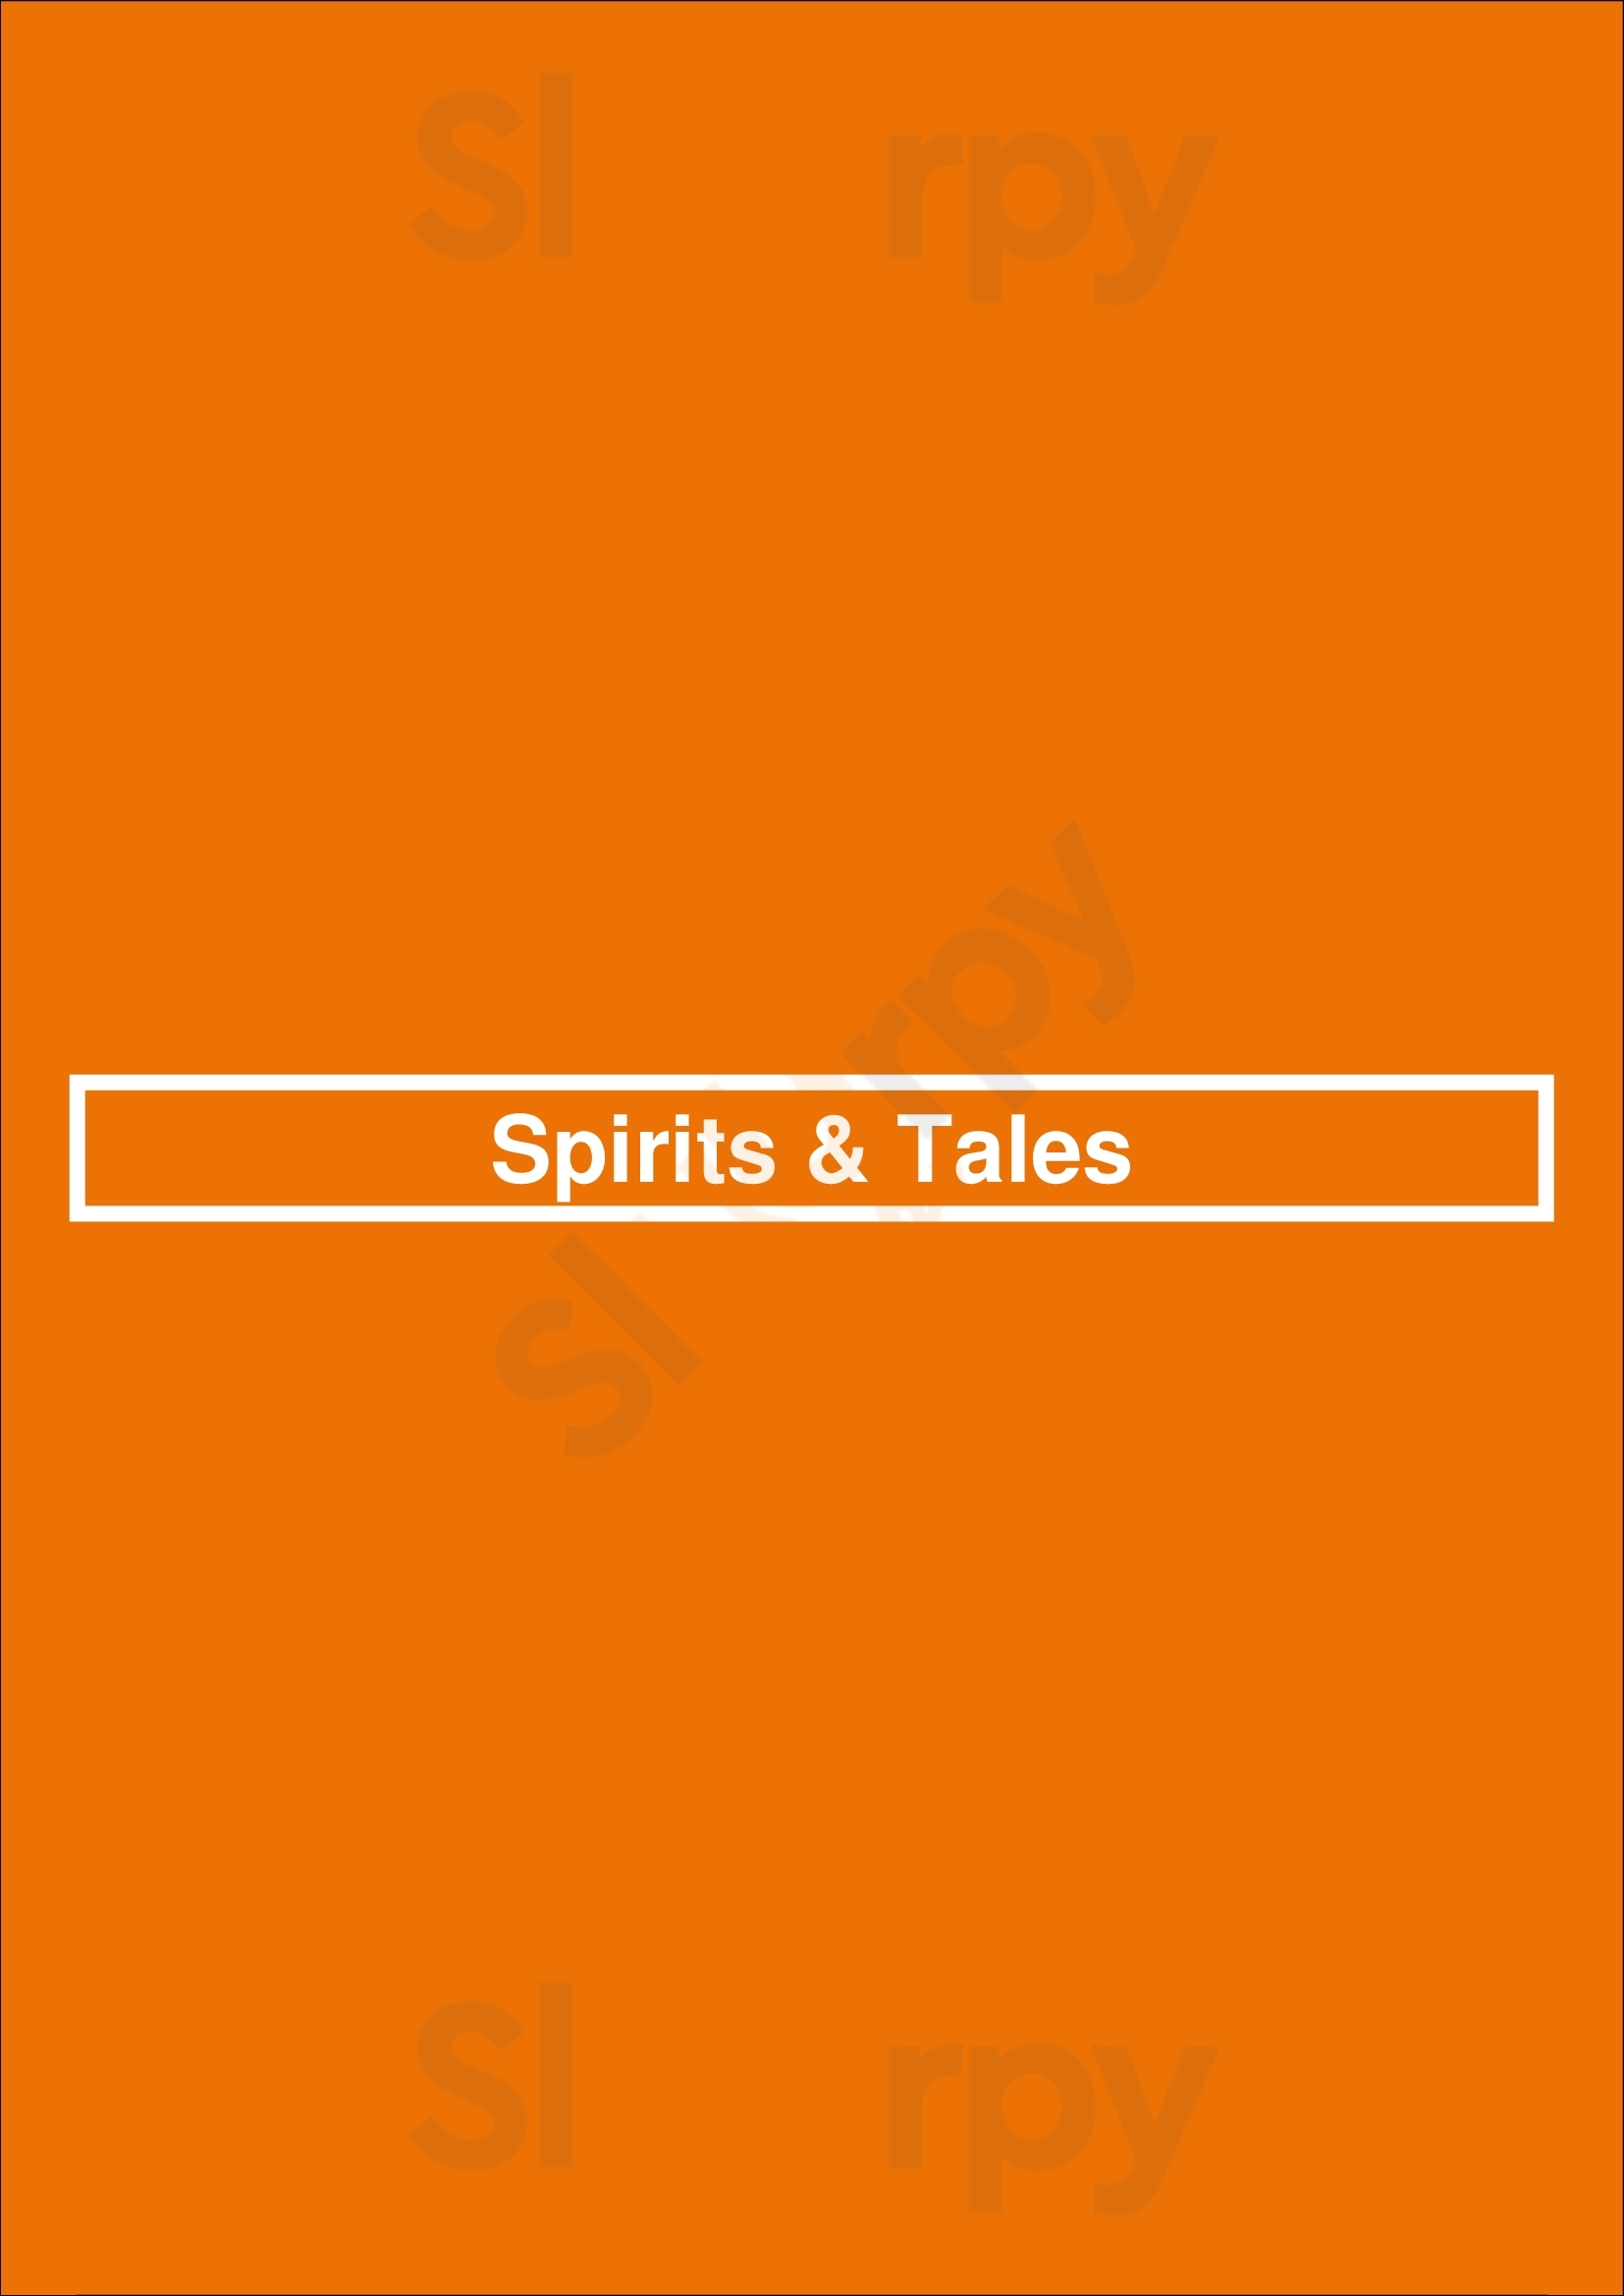 Spirit & Tales Pittsburgh Menu - 1